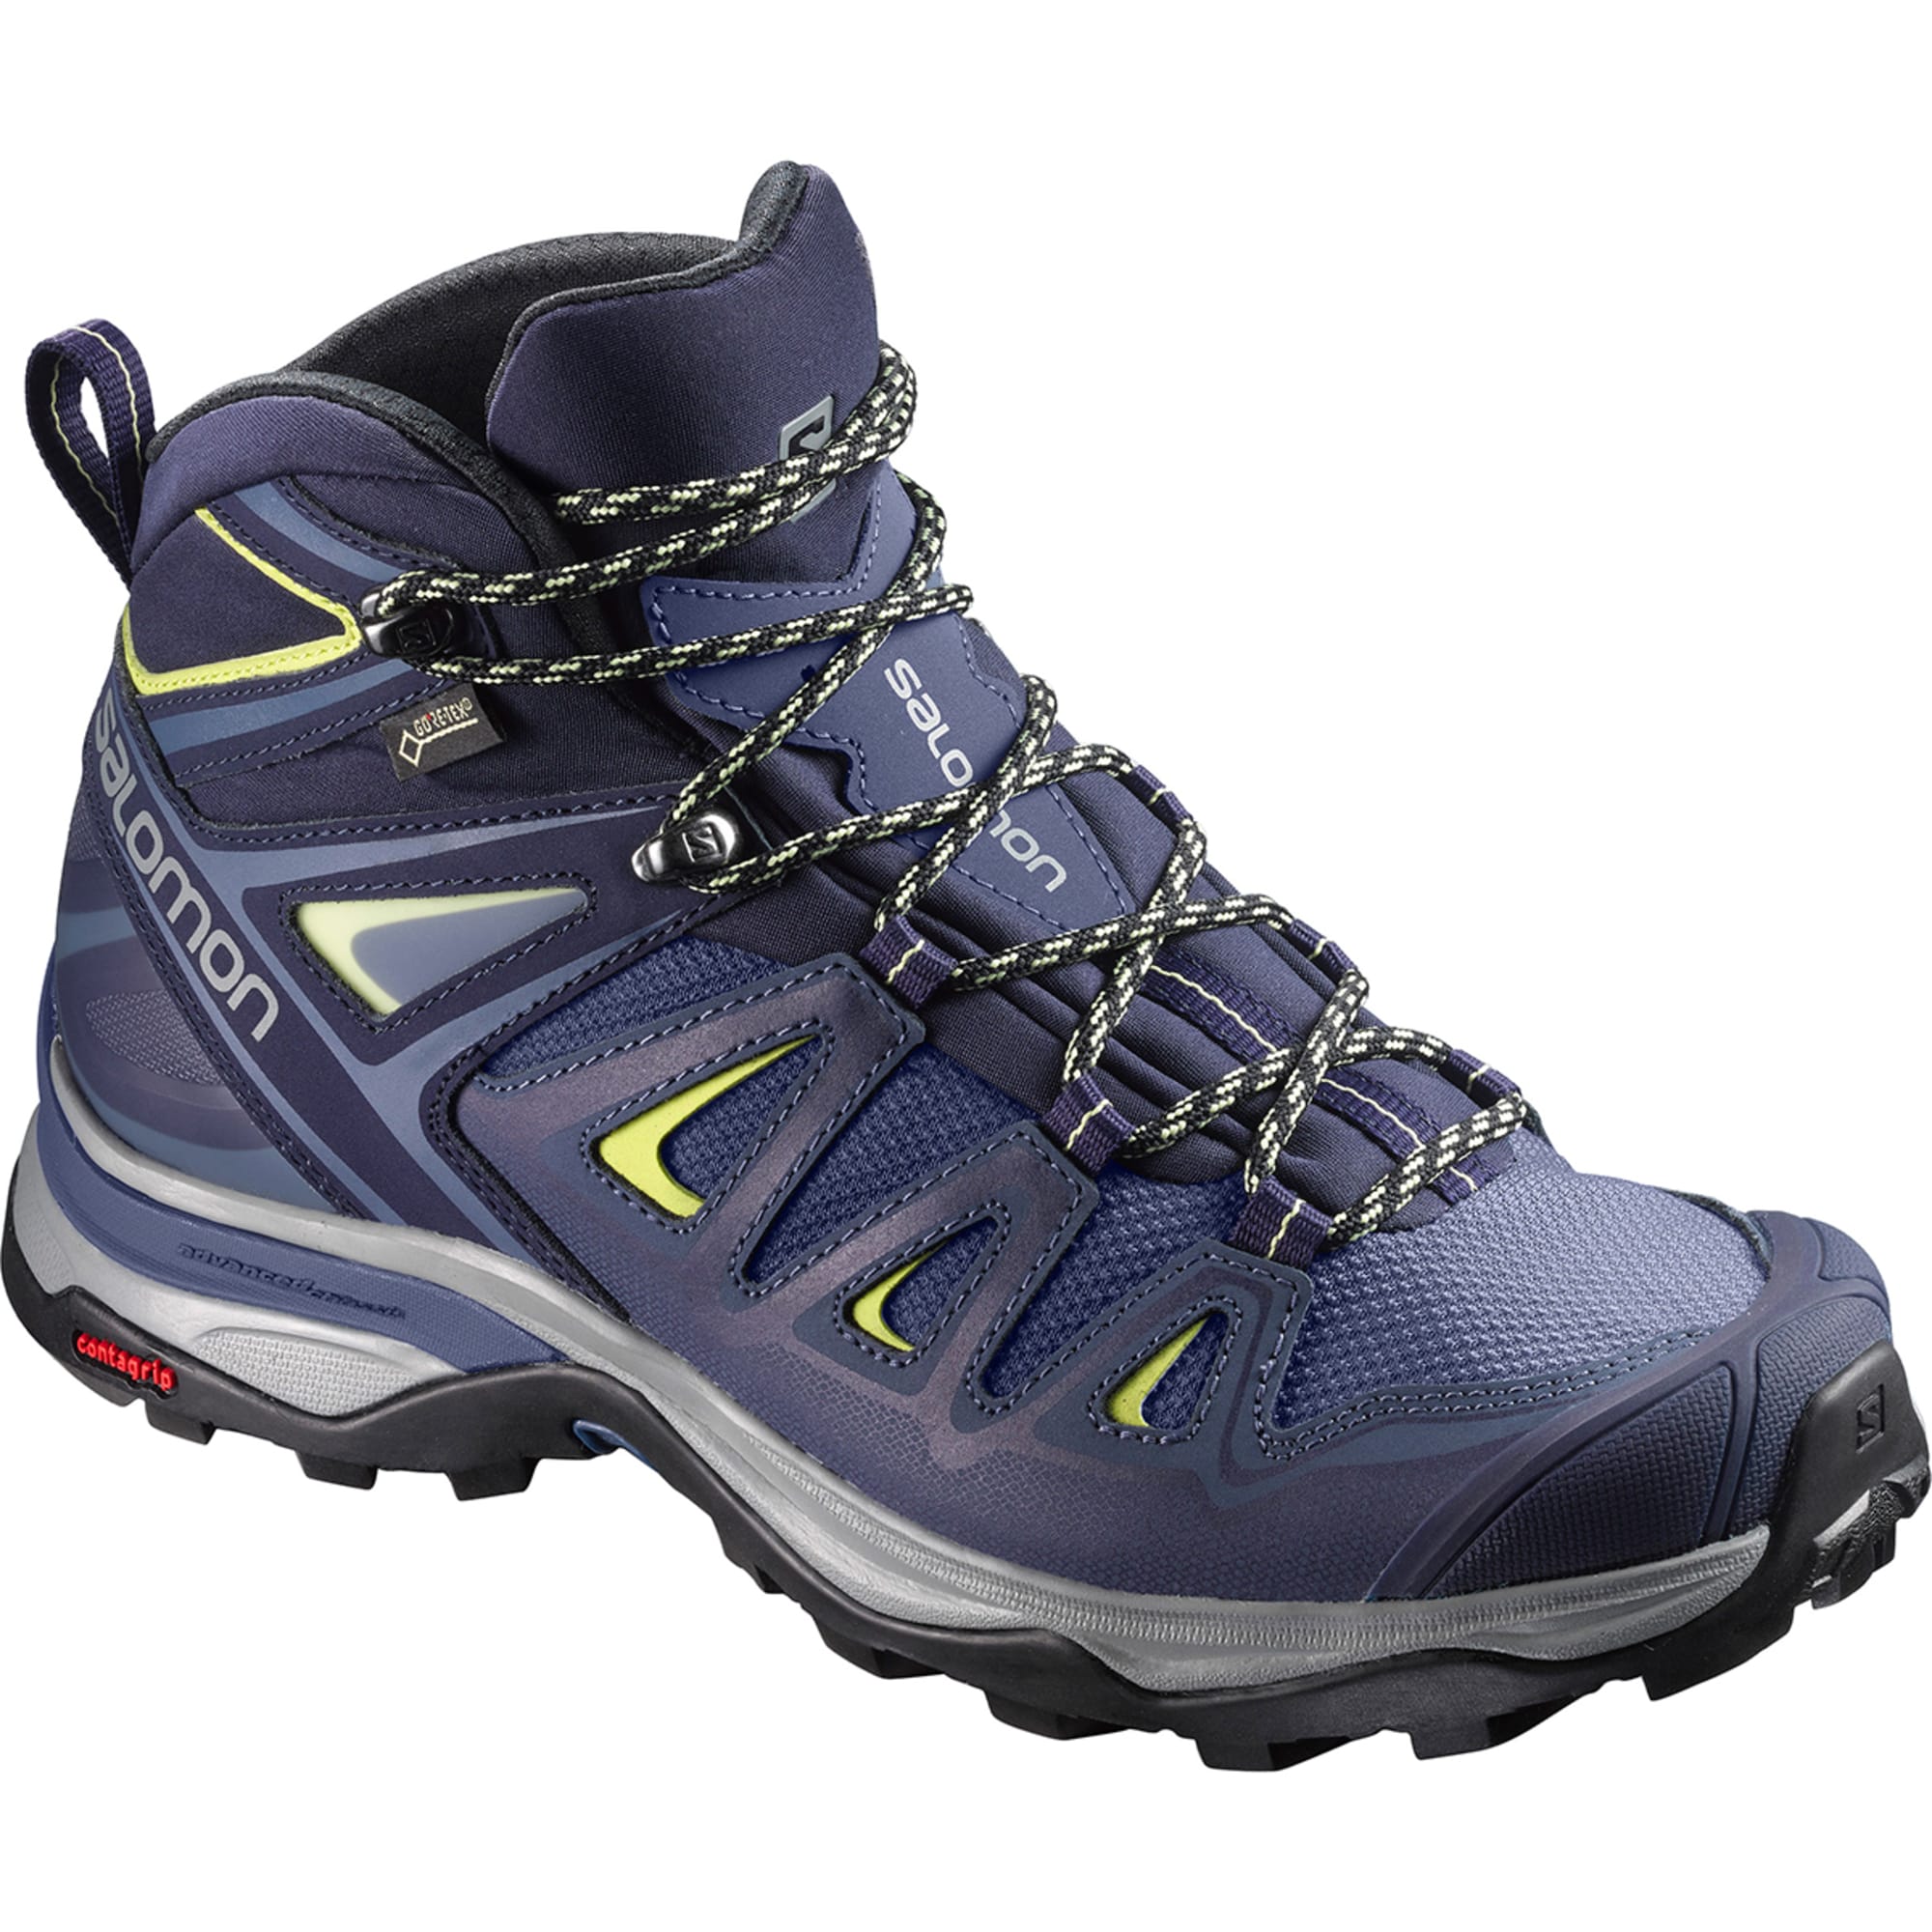 SALOMON Women's X GTX Waterproof Hiking Boots - Eastern Mountain Sports